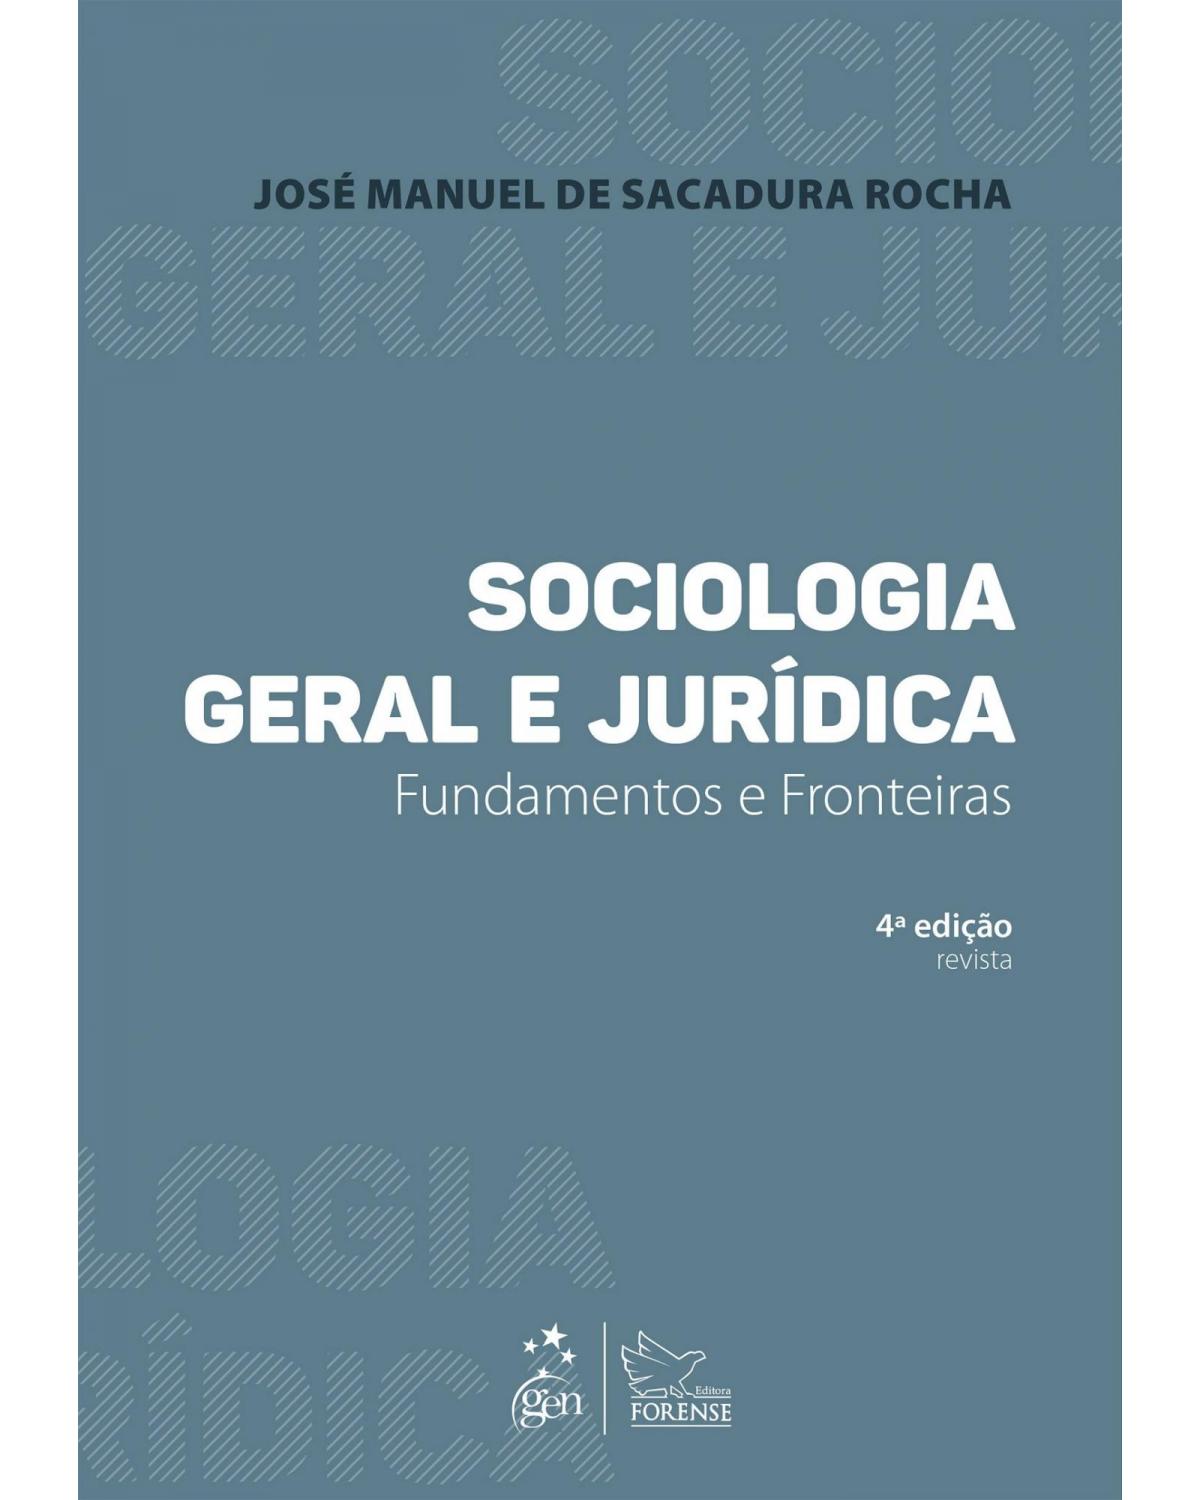 Sociologia geral e jurídica - Fundamentos e fronteiras - 4ª Edição | 2015